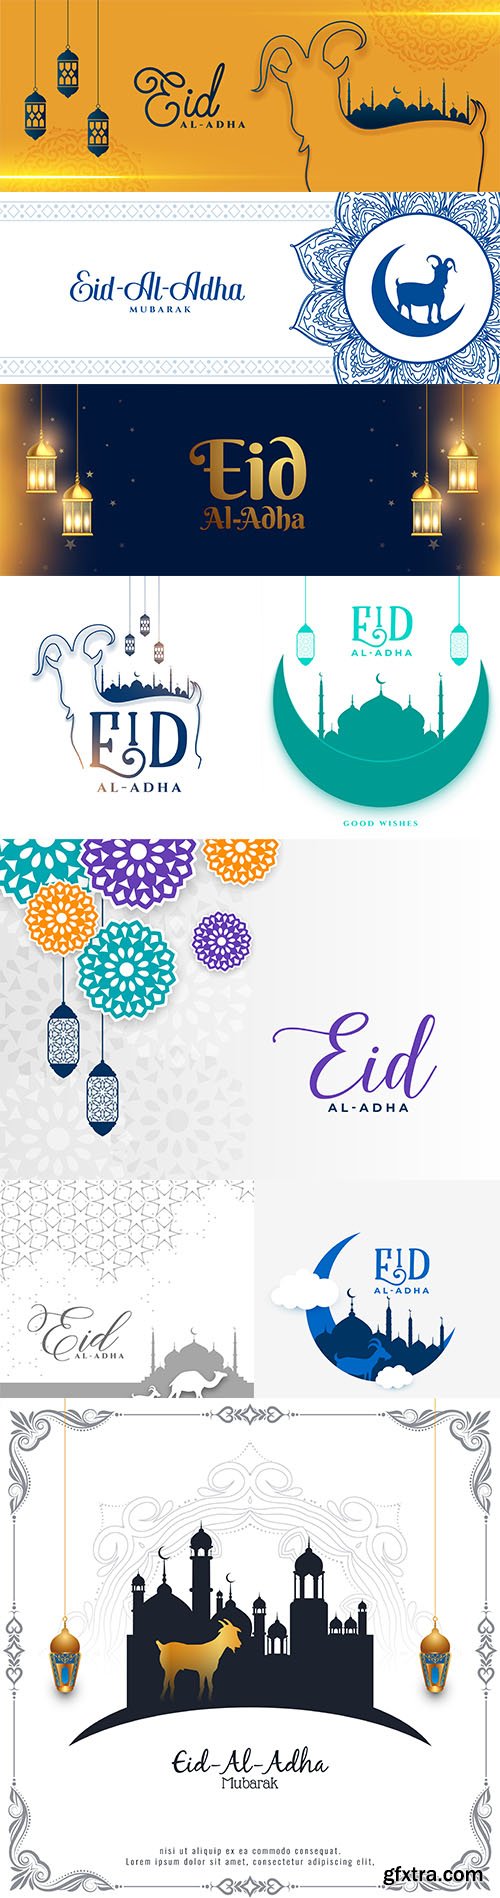 Eid al adha islamic festival banner design